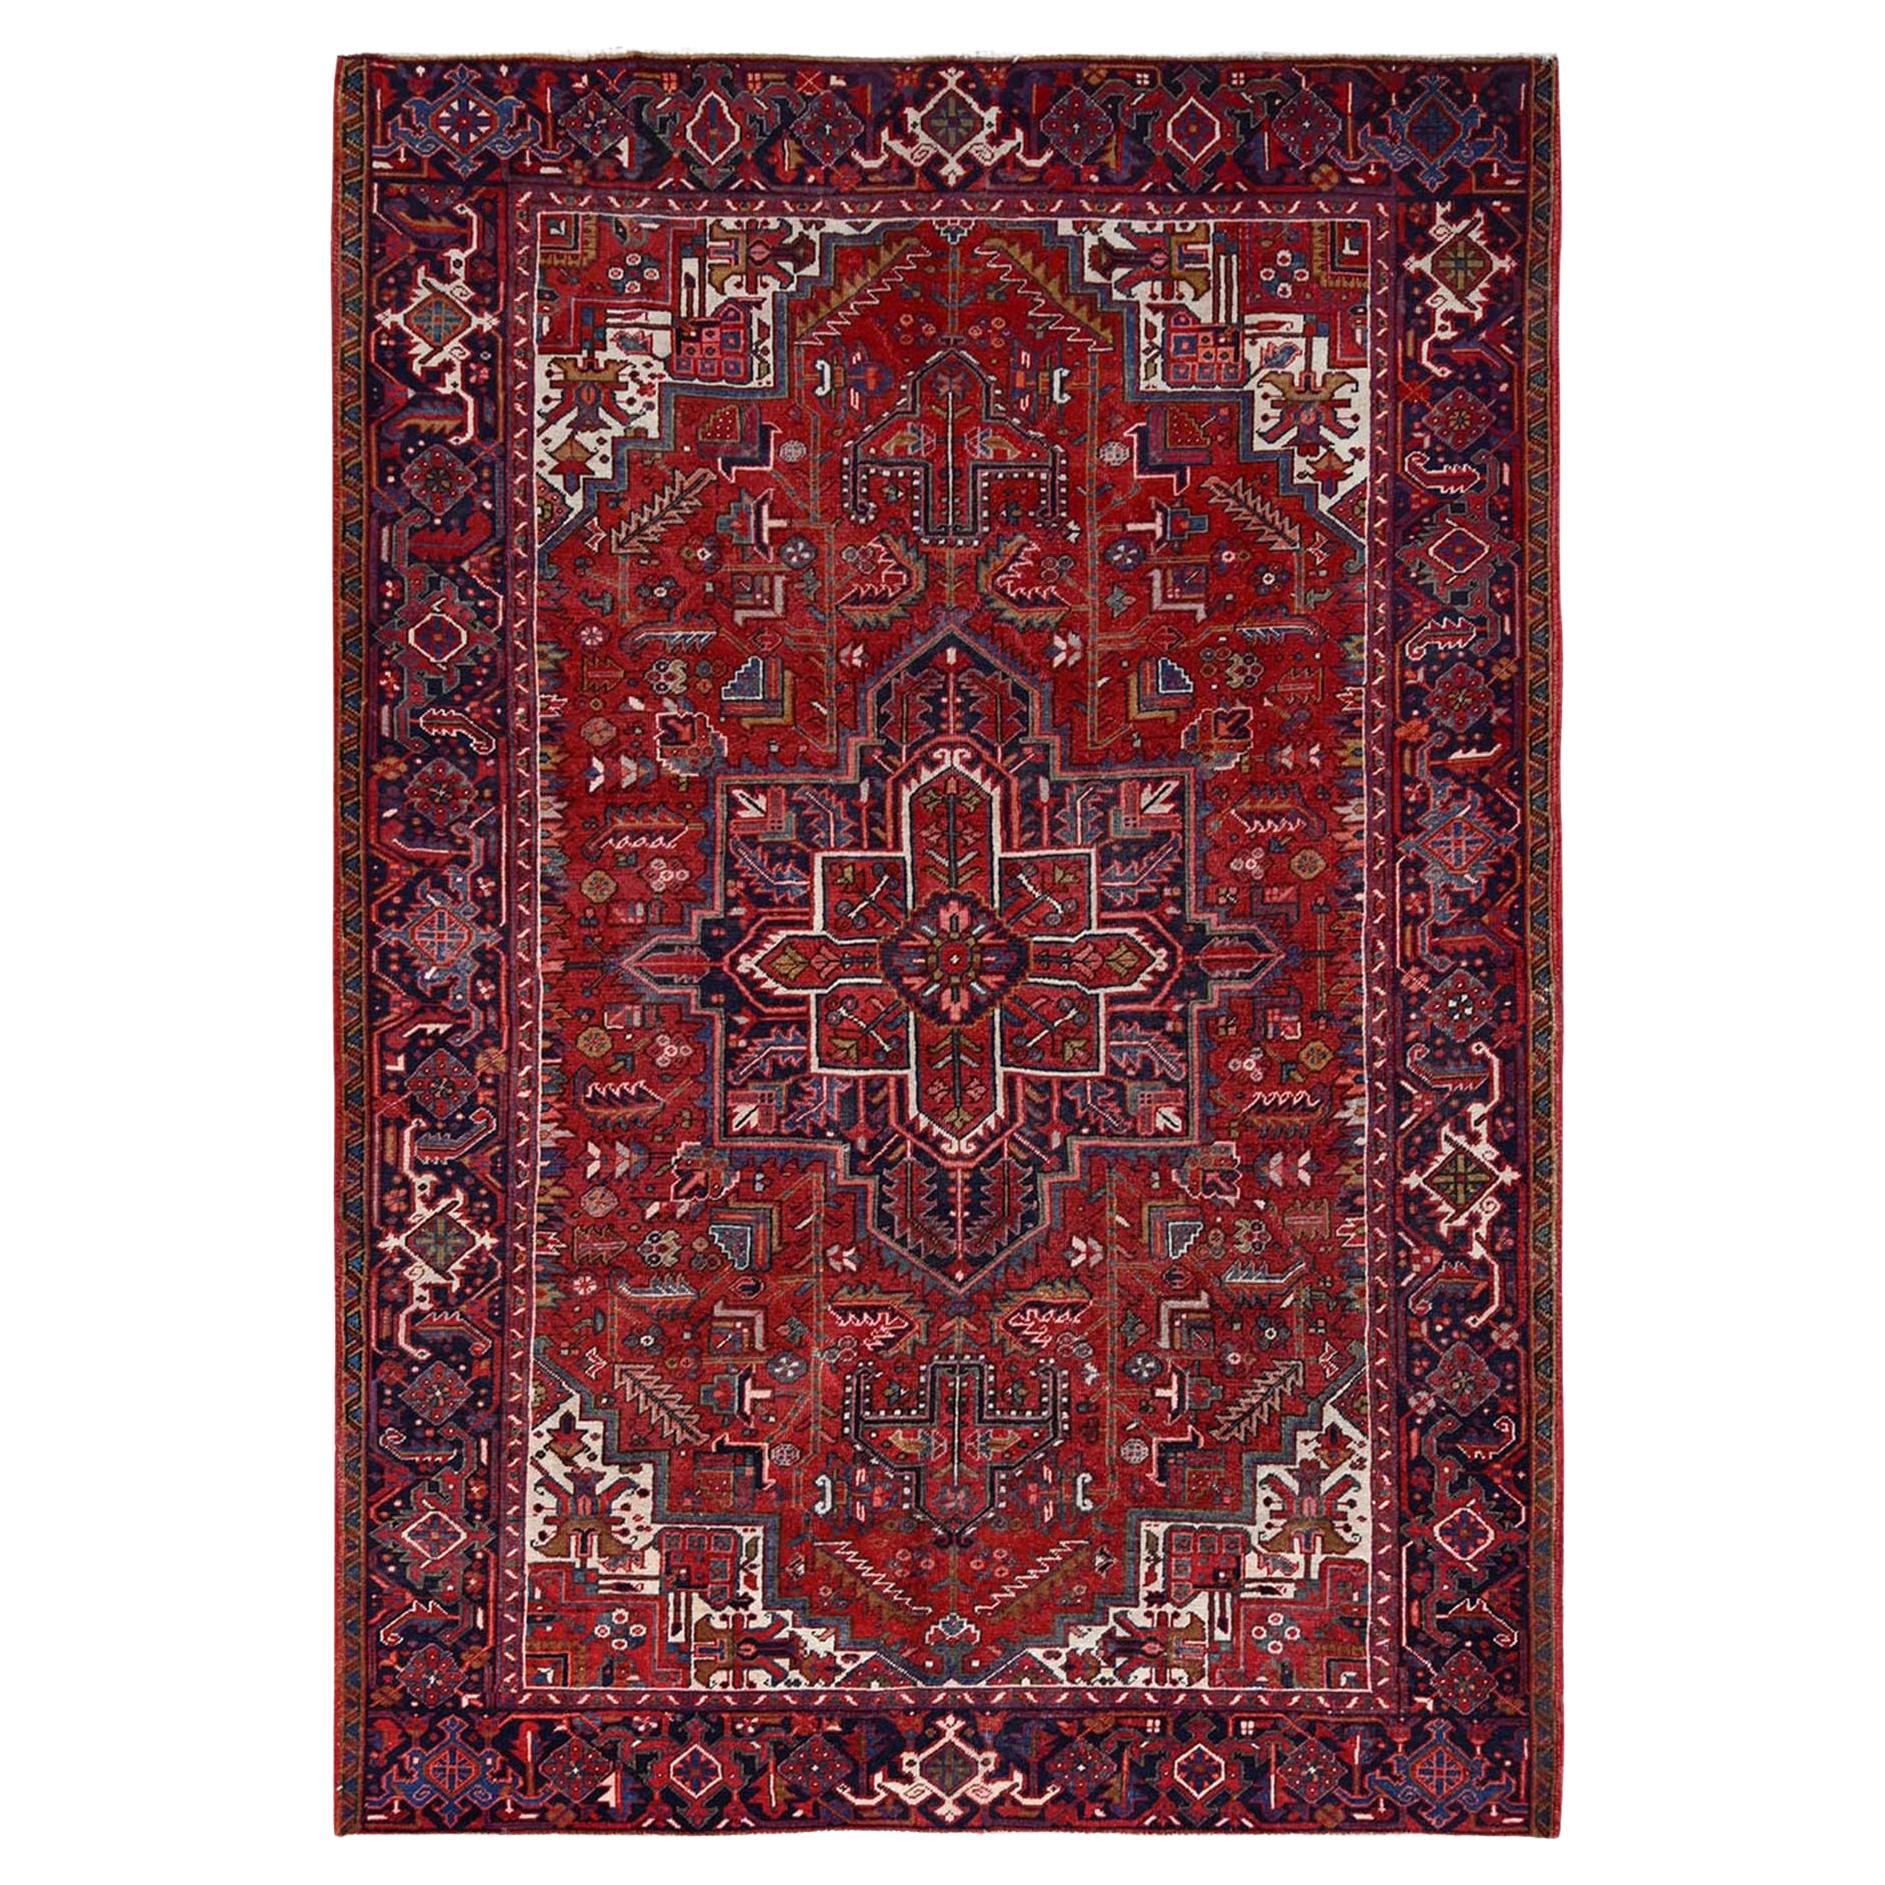 Roter handgeknüpfter Vintage persischer Heriz-Teppich aus reiner Wolle im Used-Look, Abend-Look, Distressed Feel